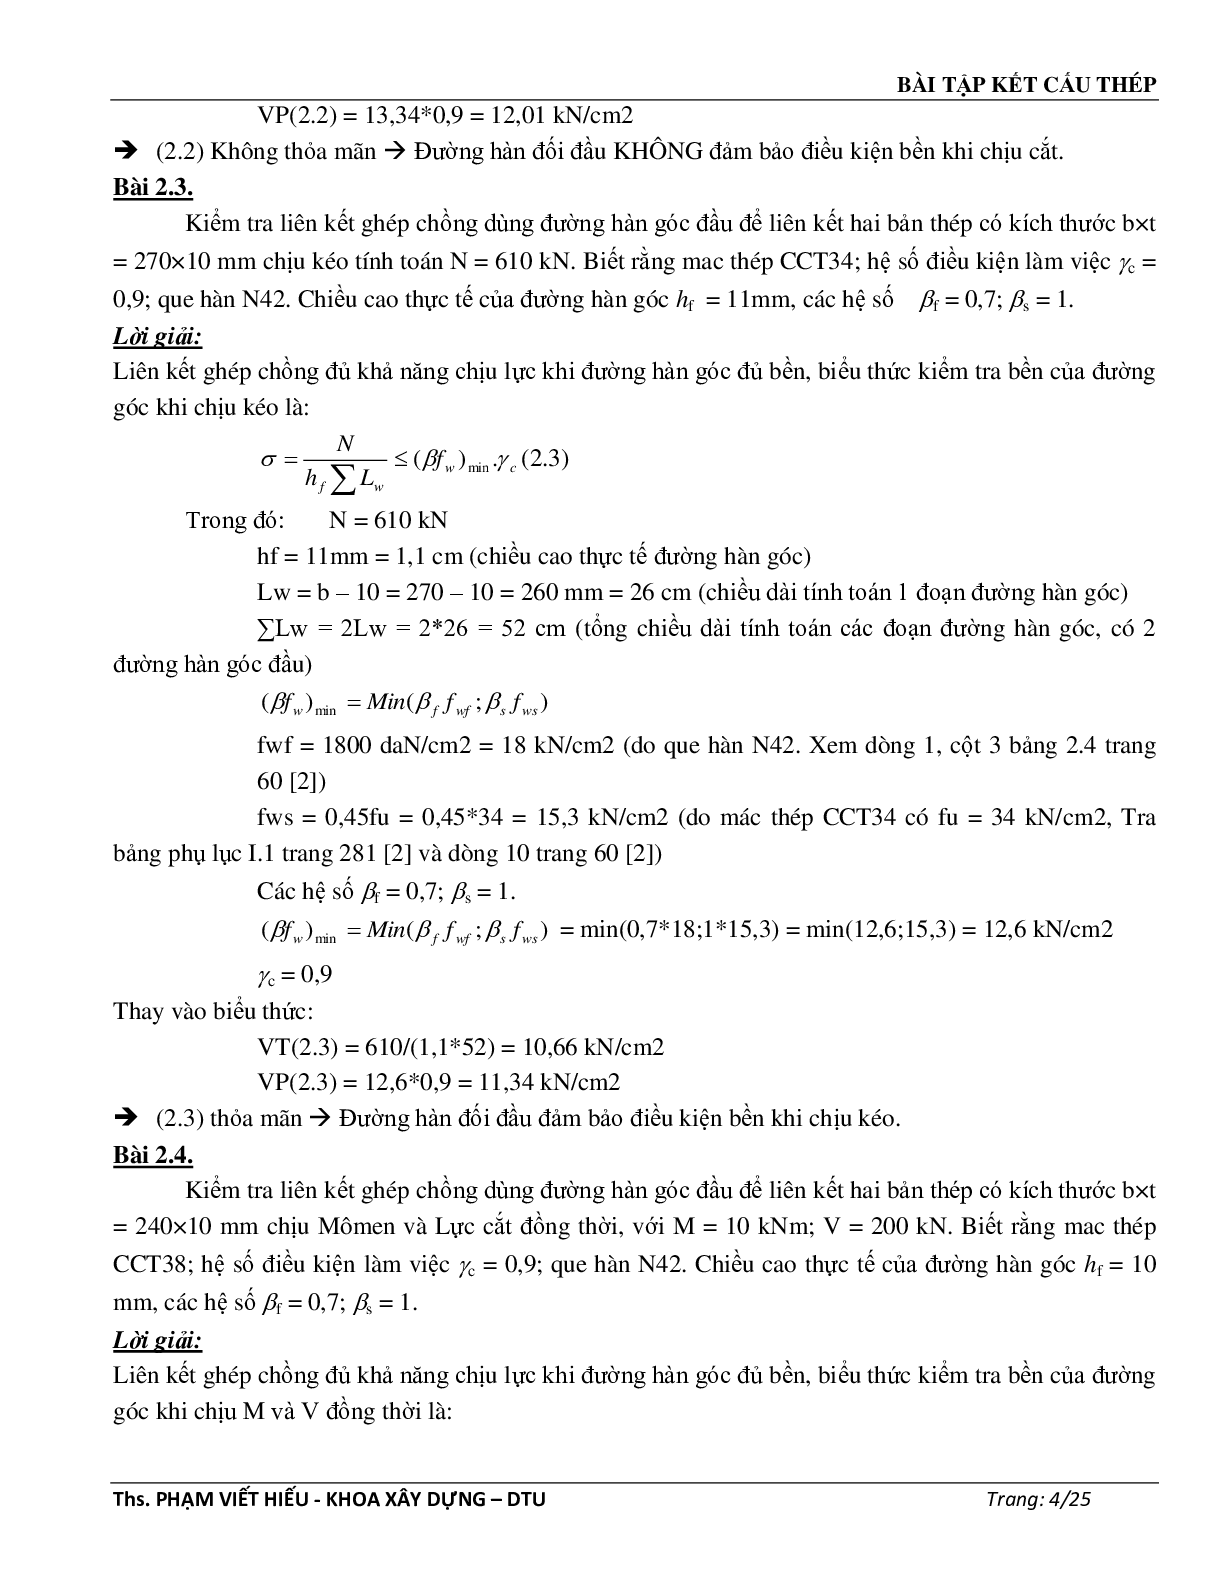 Ngân hàng bài tập môn Kết cấu thép (có đáp án) | Trường Đại học Duy Tân (trang 5)